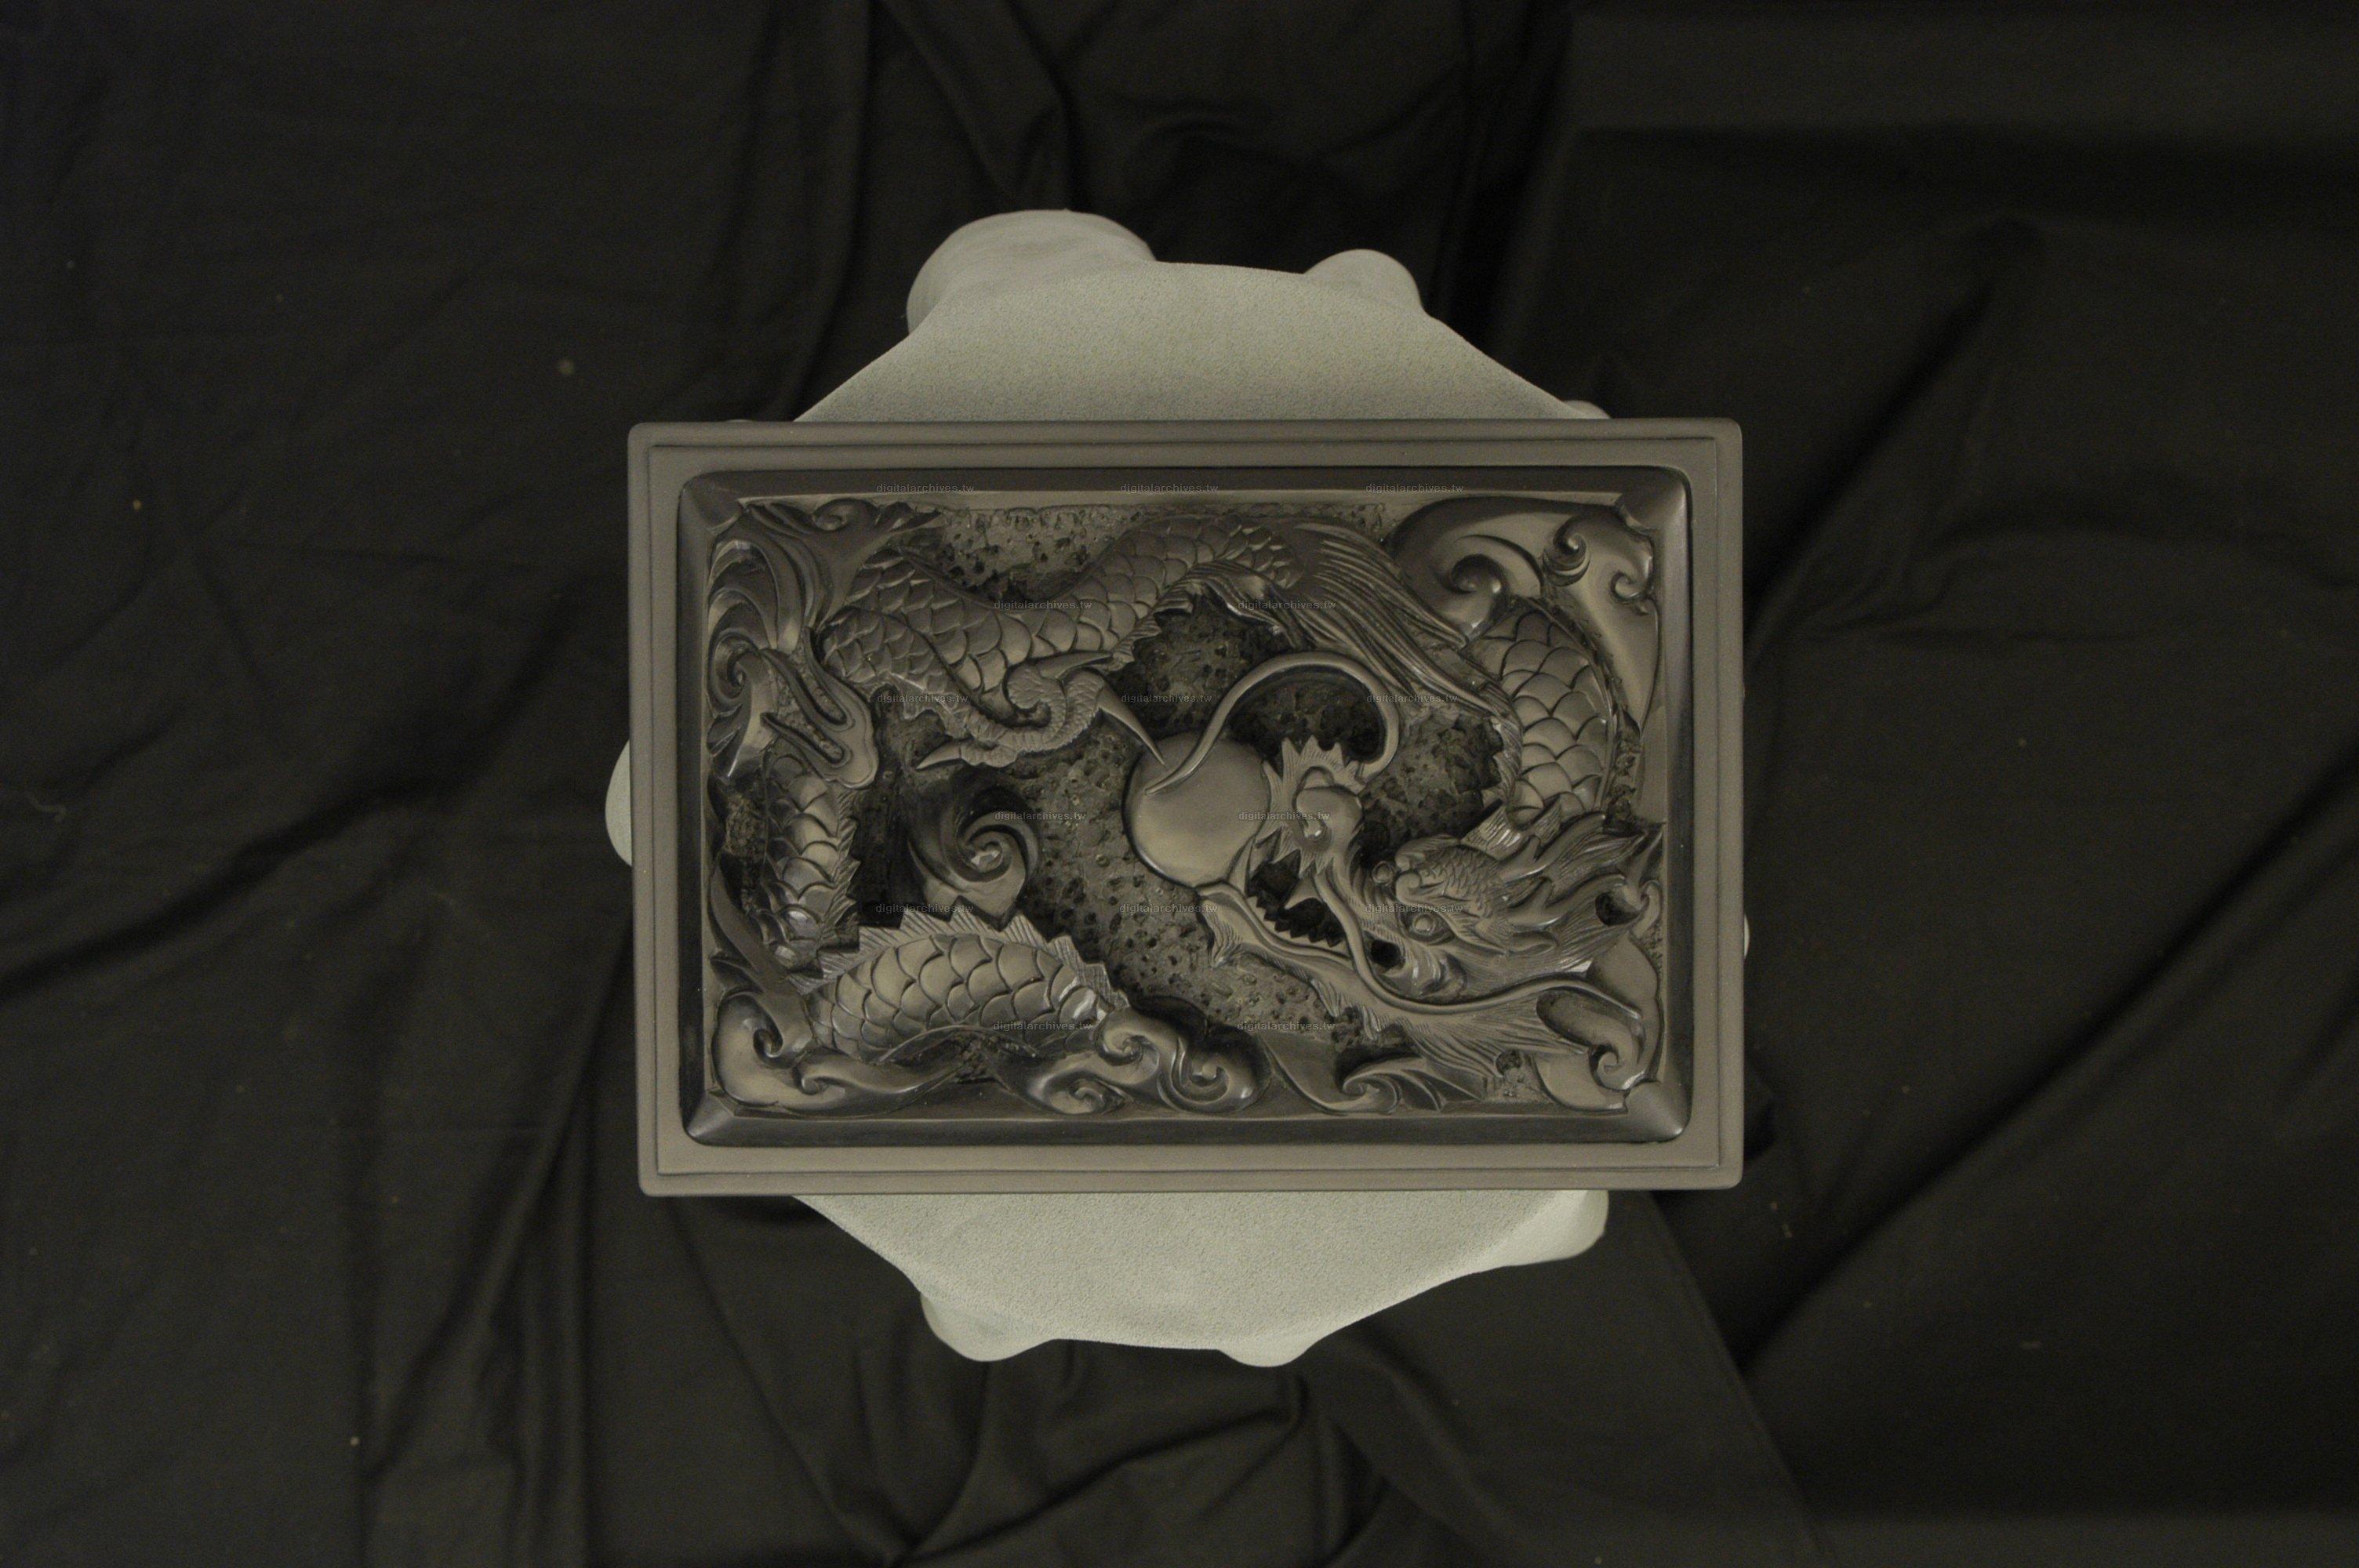 藏品名稱:韓國雕龍石硯(入藏登錄號006000000003C-1)件名:韓國雕龍石硯